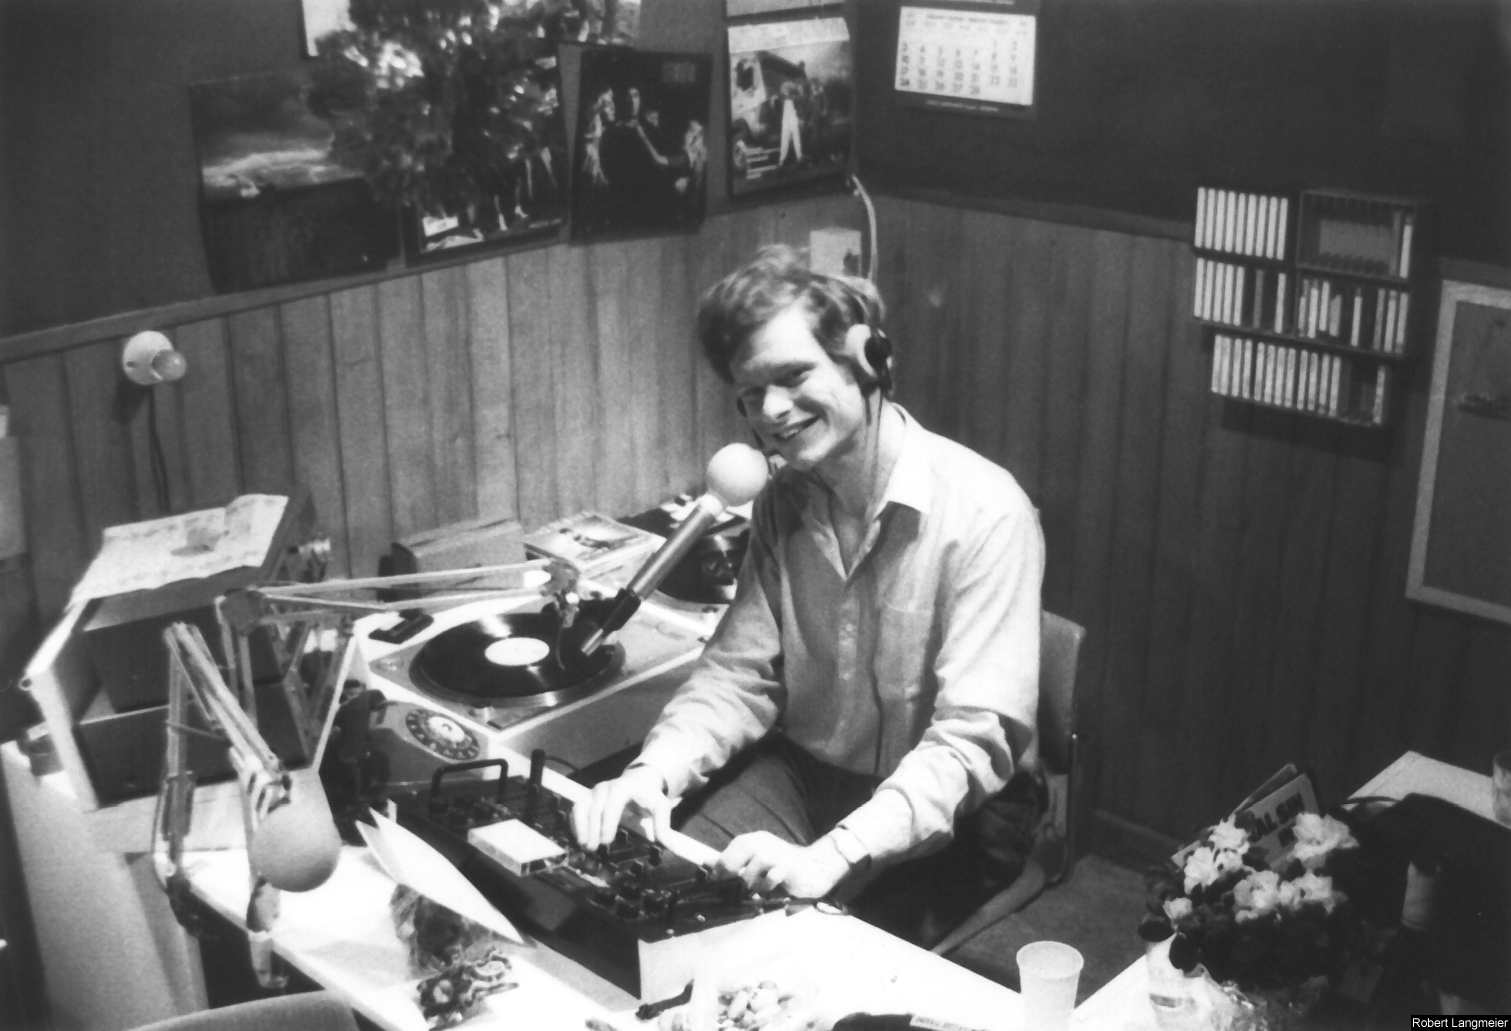 Le studio d'Amplitude Bleue (ABFM) en 1984